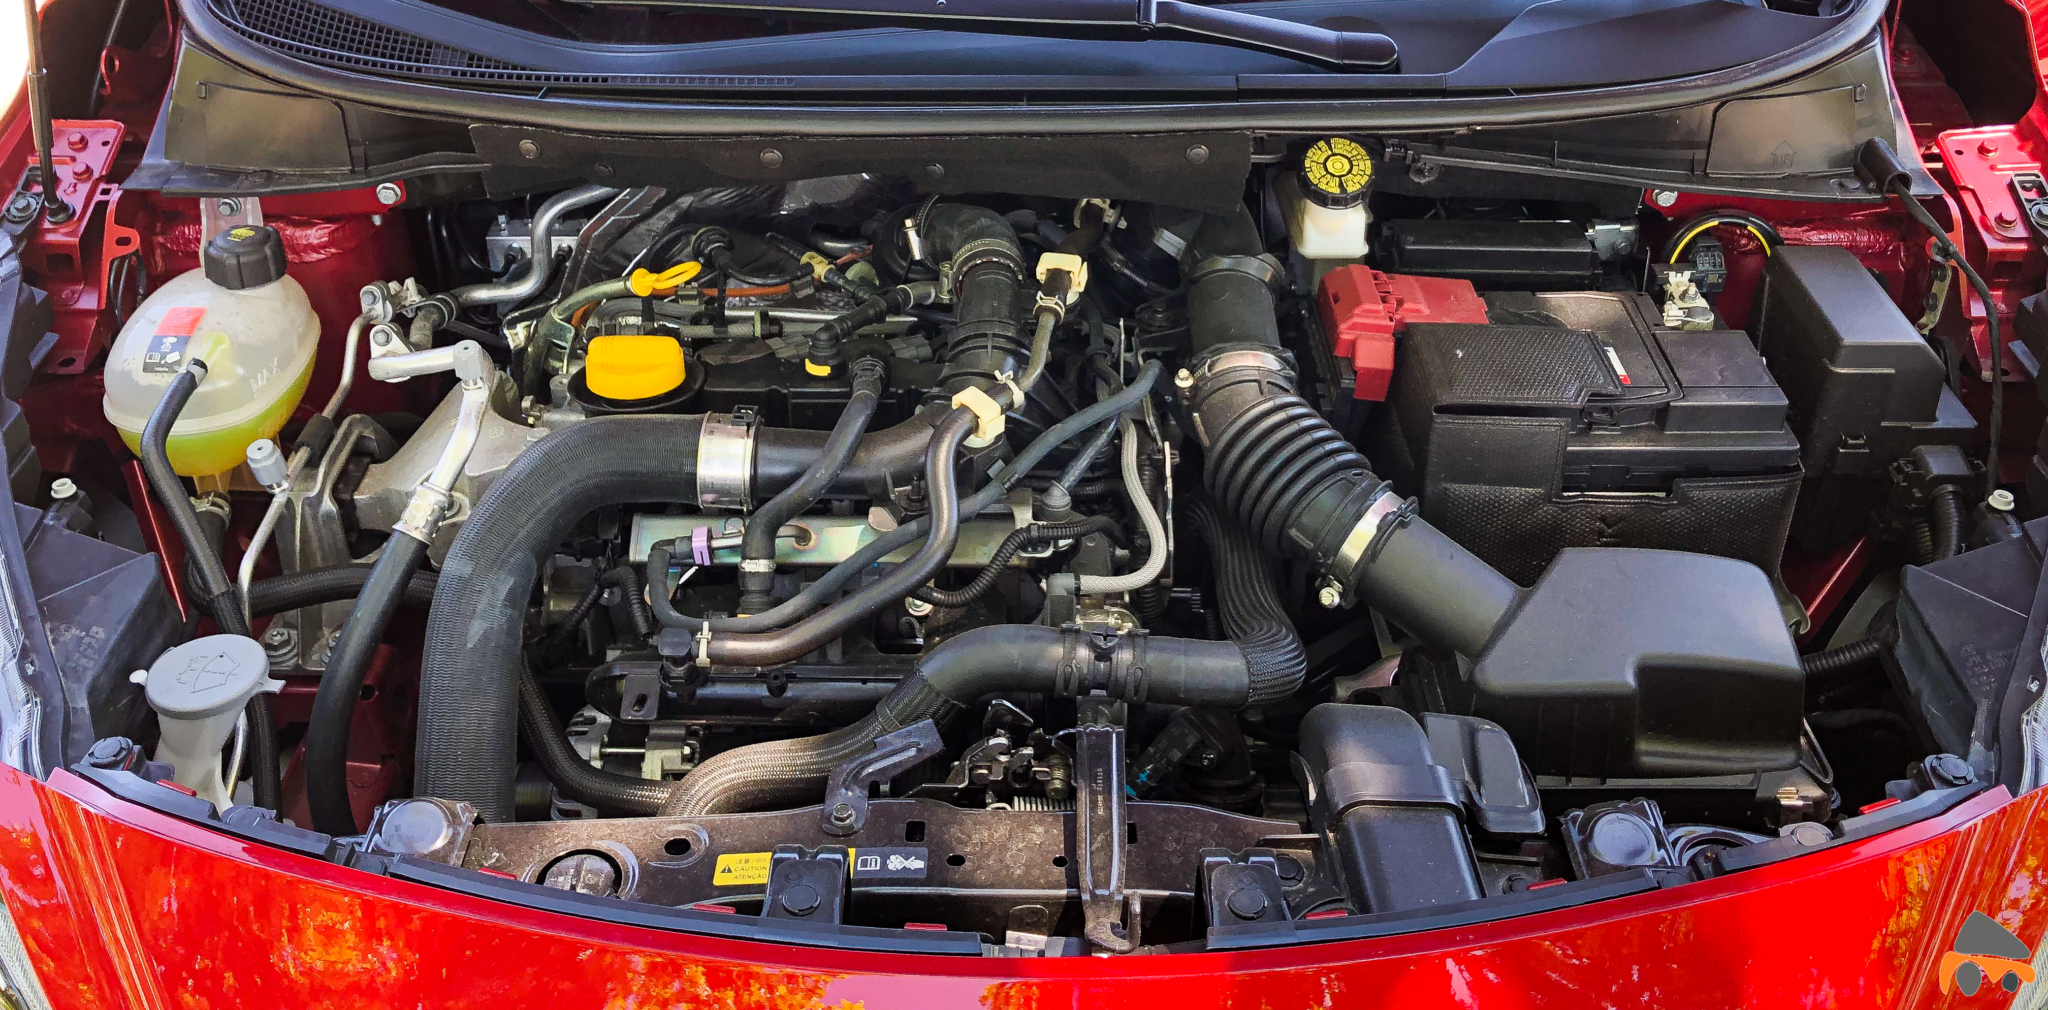 Motor nissan micra - Nissan Micra 2019: Ahora con un nuevo motor y más teconología